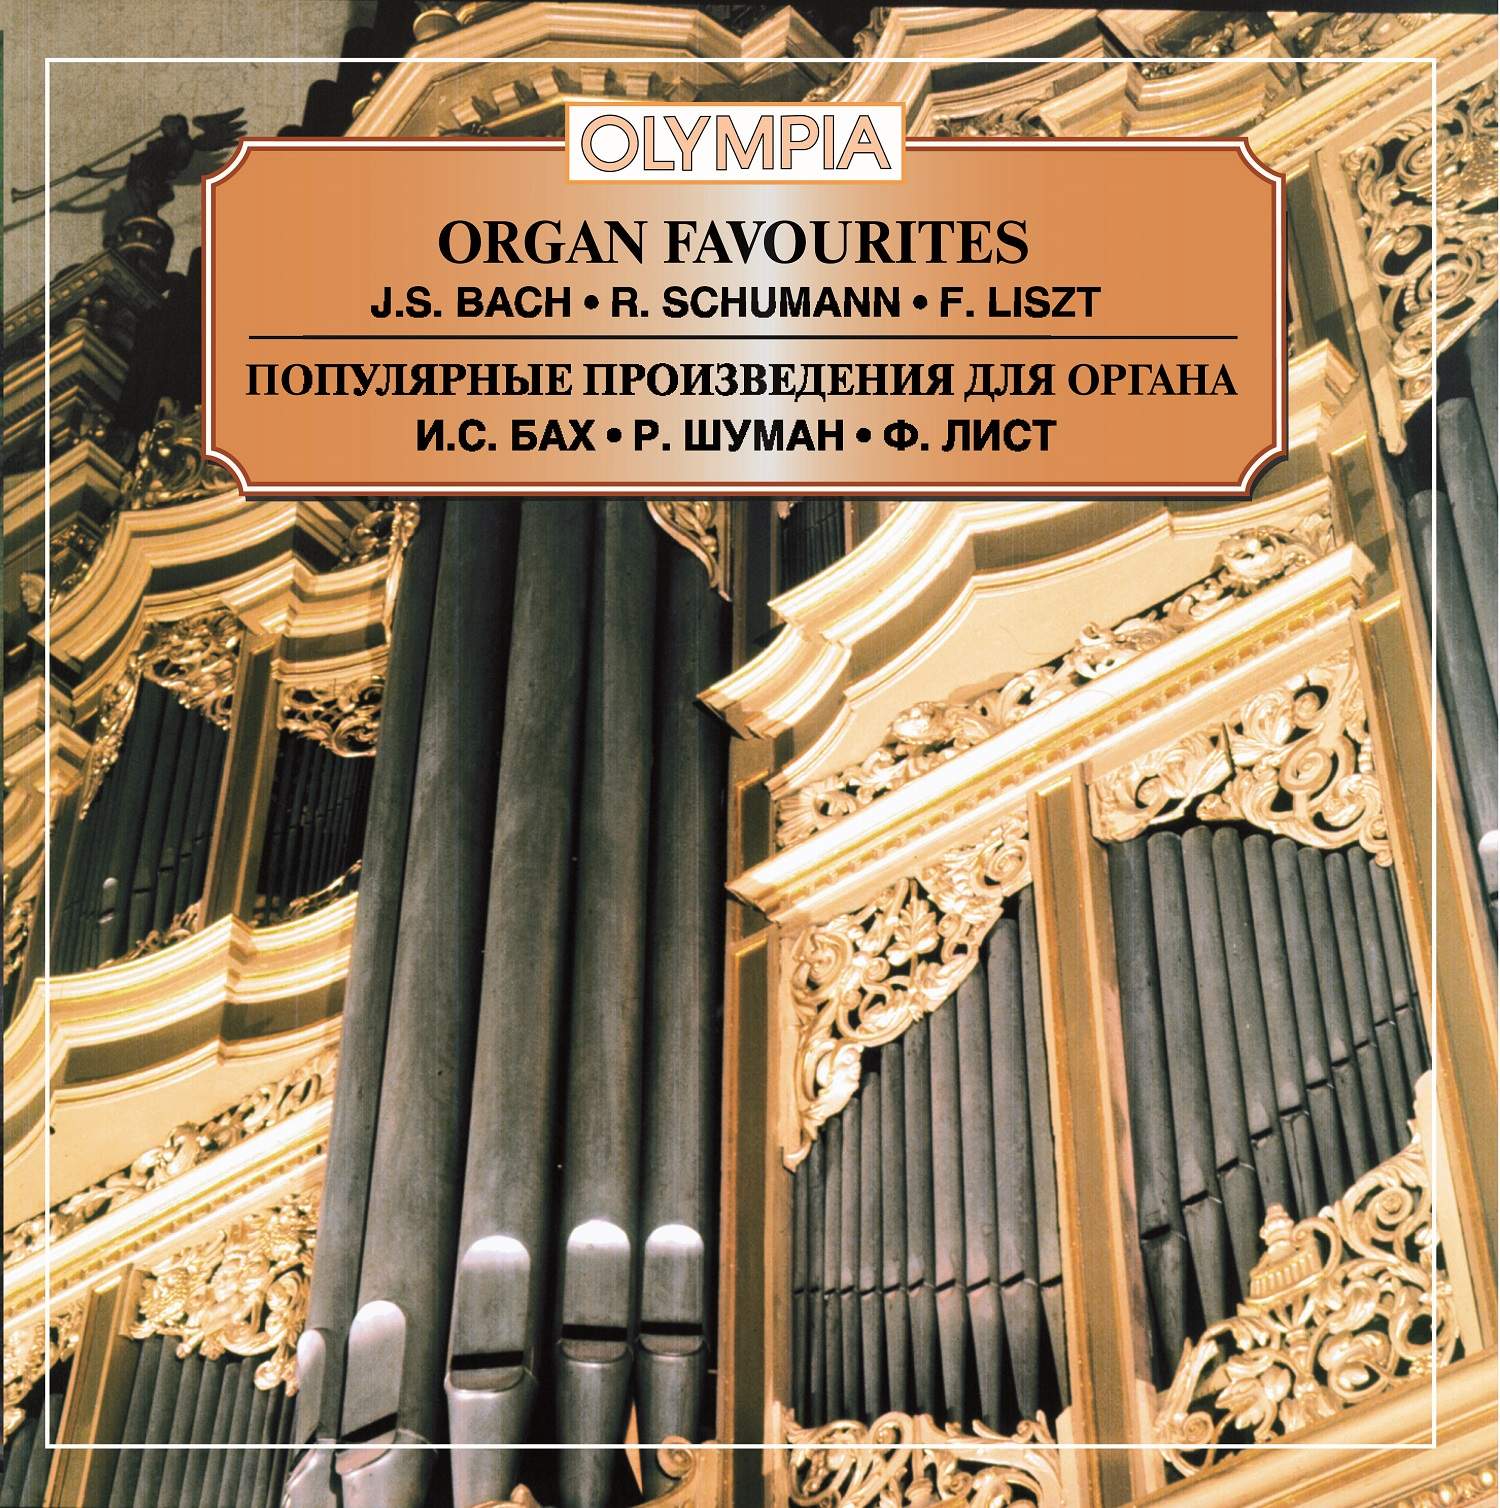 Бах лучшие произведения. Произведения для органа. Органные произведения Баха. Известные произведения для органа Баха. Самое известное Органное произведение.